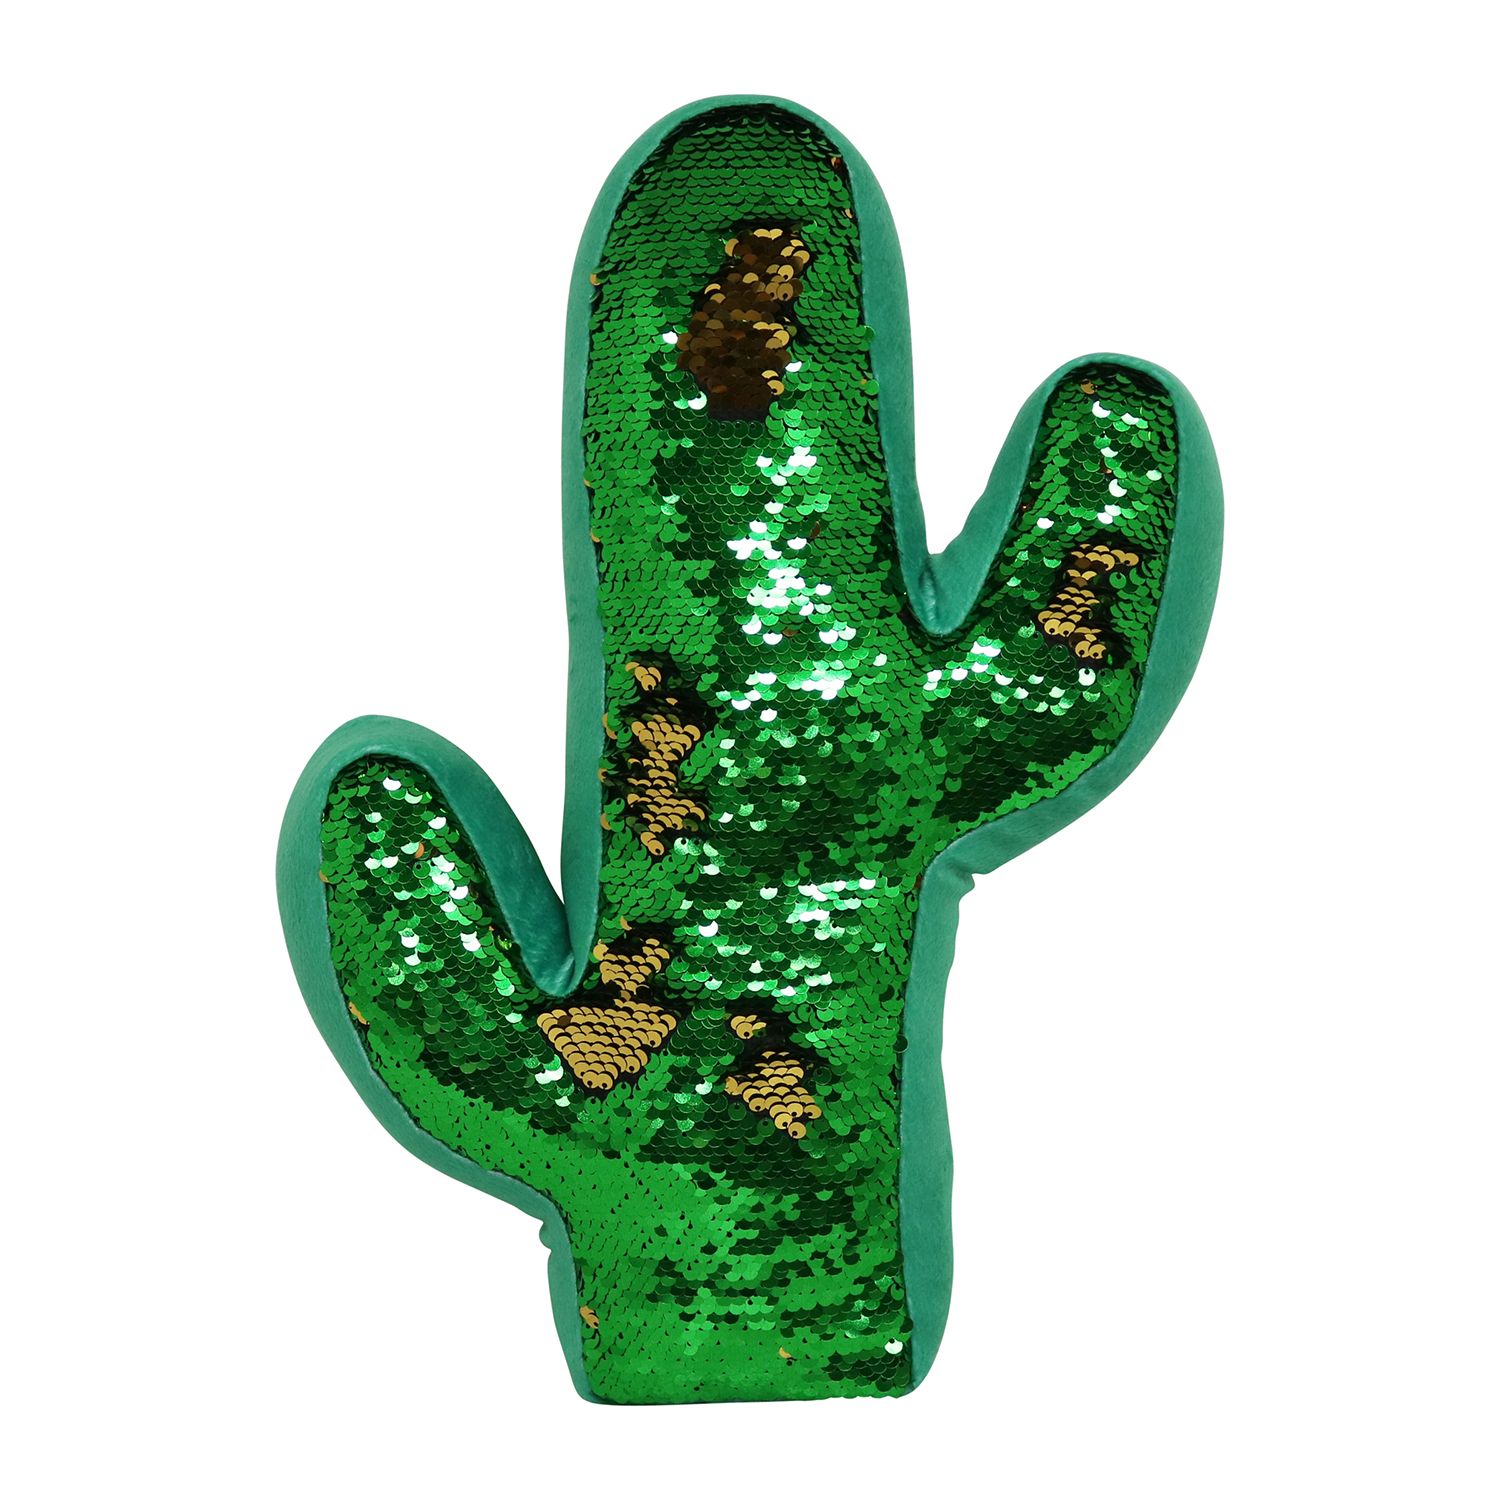 sequin cactus pillow